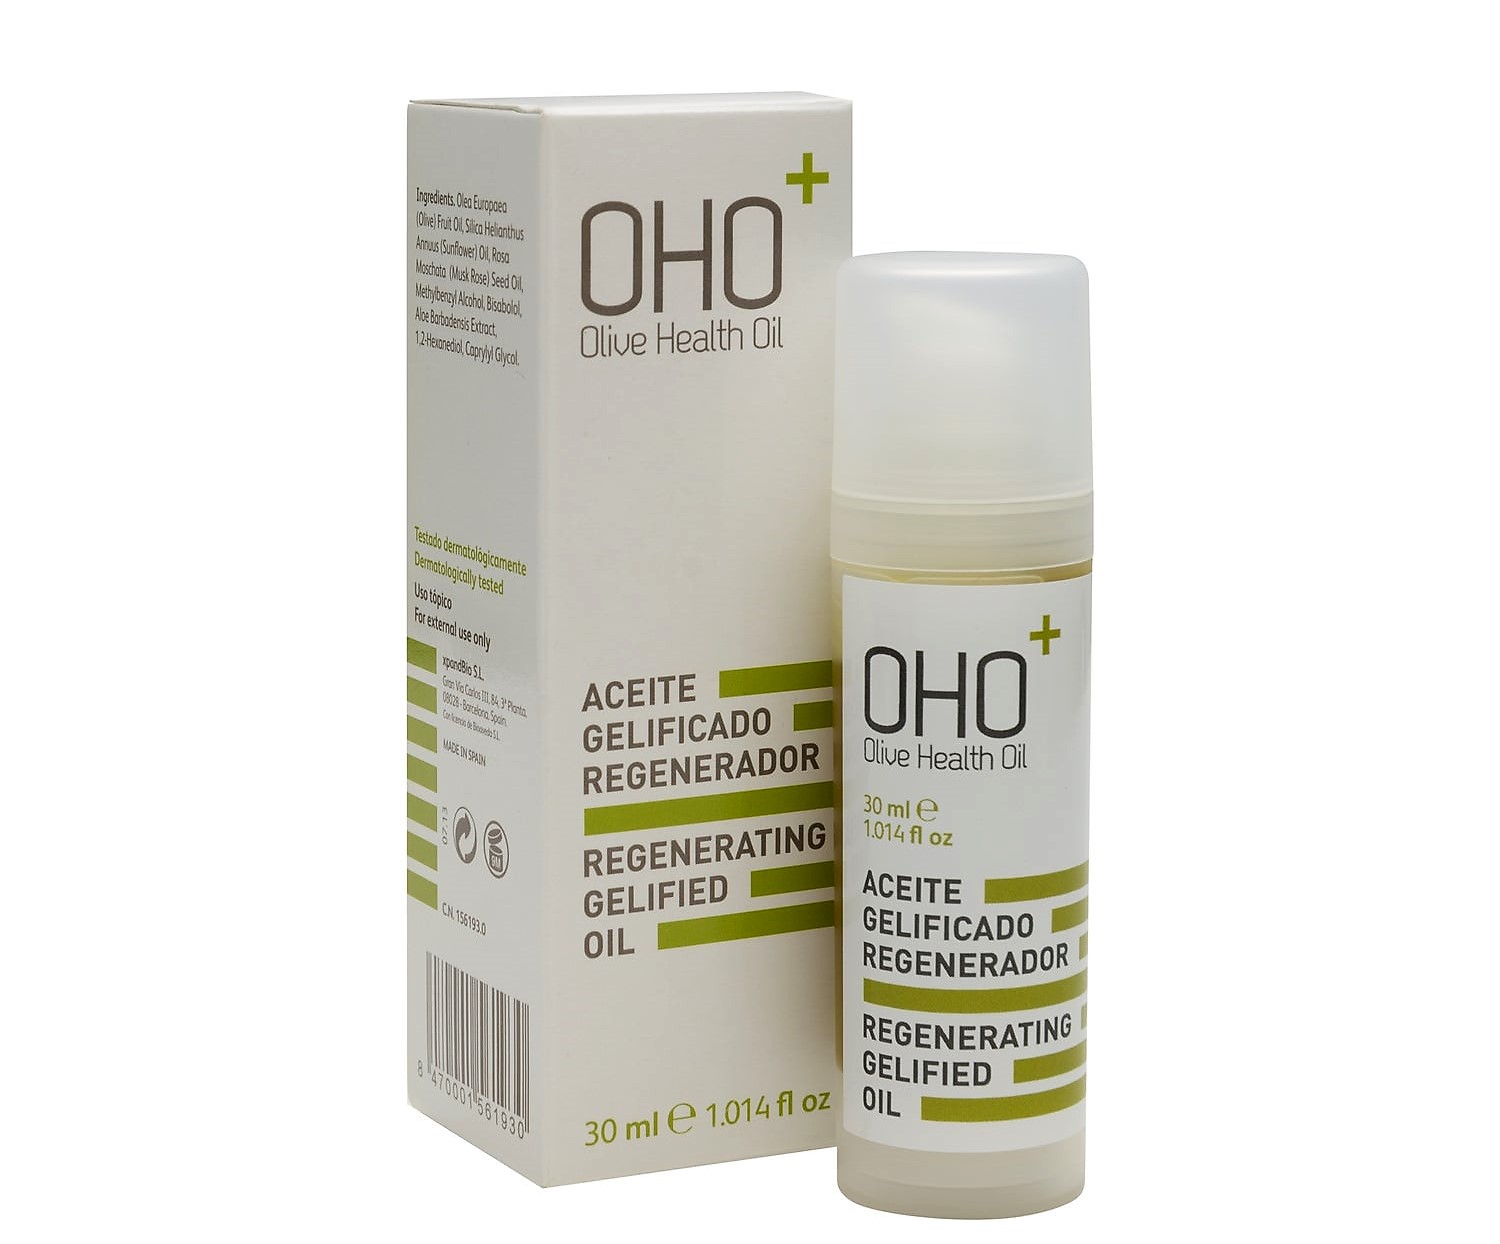 OHO Aceite Regenerador Intensivo. Gel oleoso con alto contenido en Aceite de Oliva OHO (87 %), aloe vera y rosa mosqueta para calmar y regenerar la piel en cicatrices, grietas, rojeces, rozaduras, eccemas, tatuajes y otras agresiones externas de la piel.